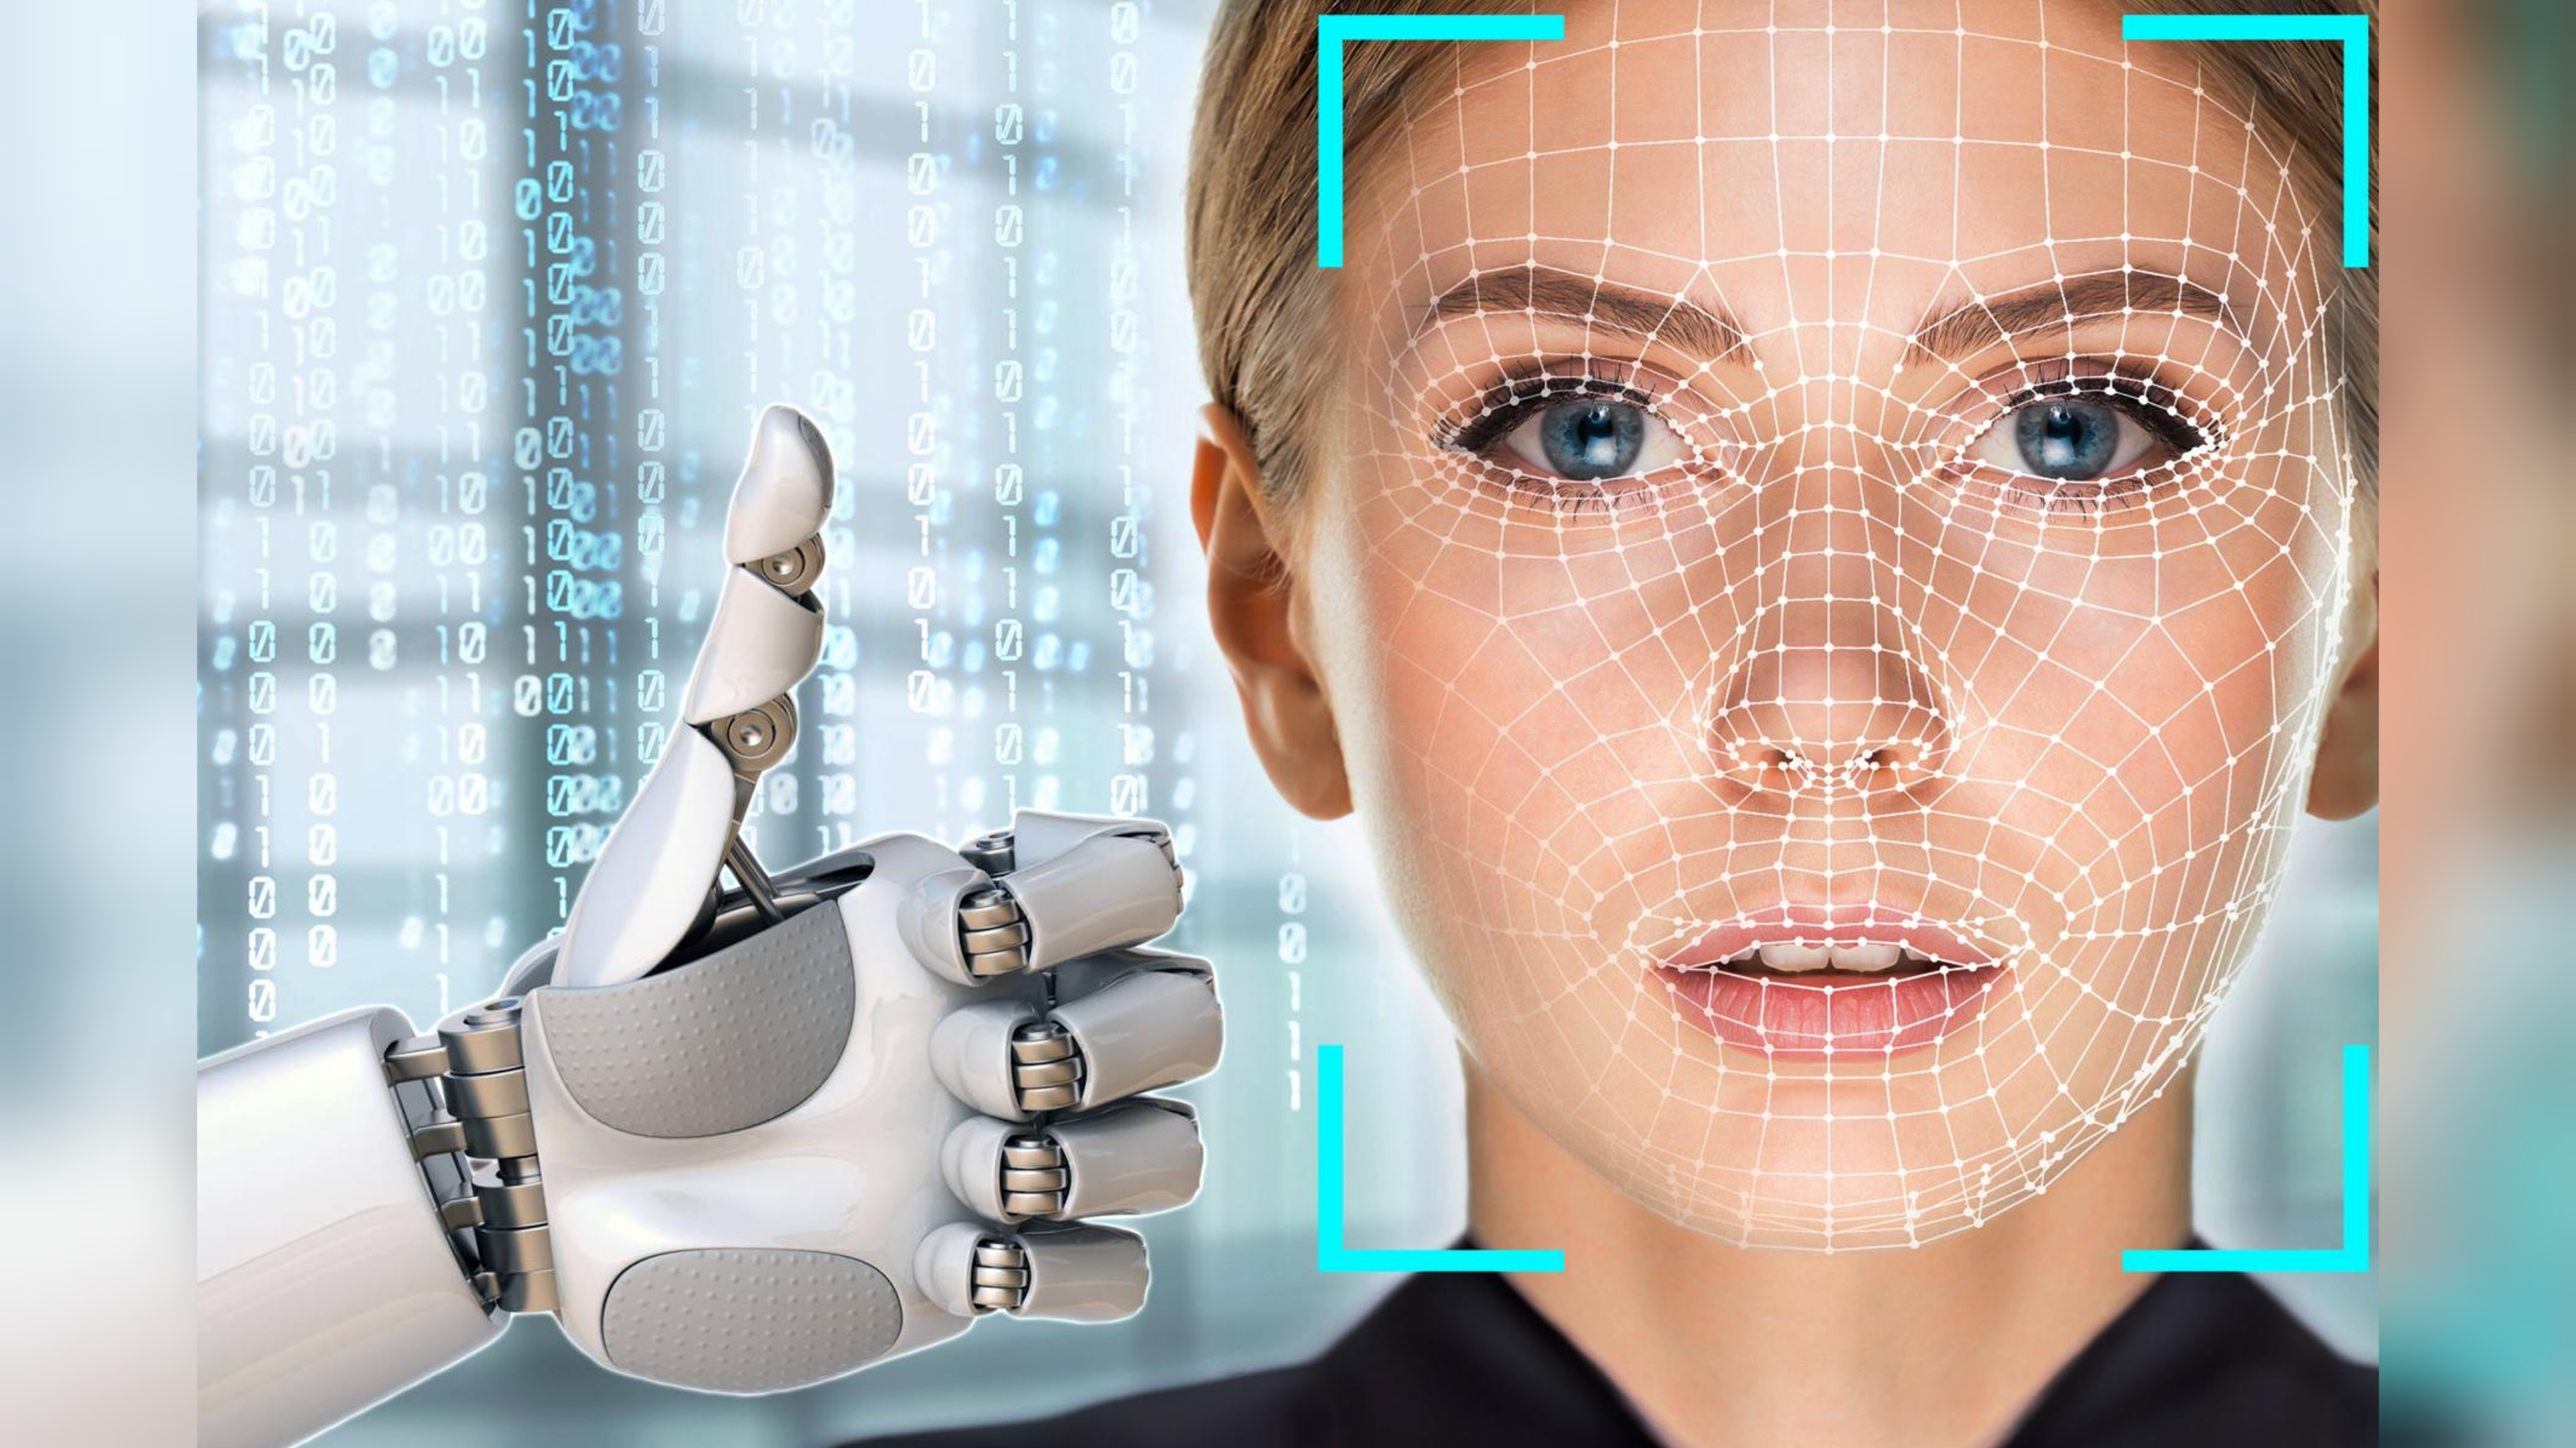 Как научиться определять людей. Распознавание лиц. Технология распознавания лиц. Биометрия лица. Искусственный интеллект.